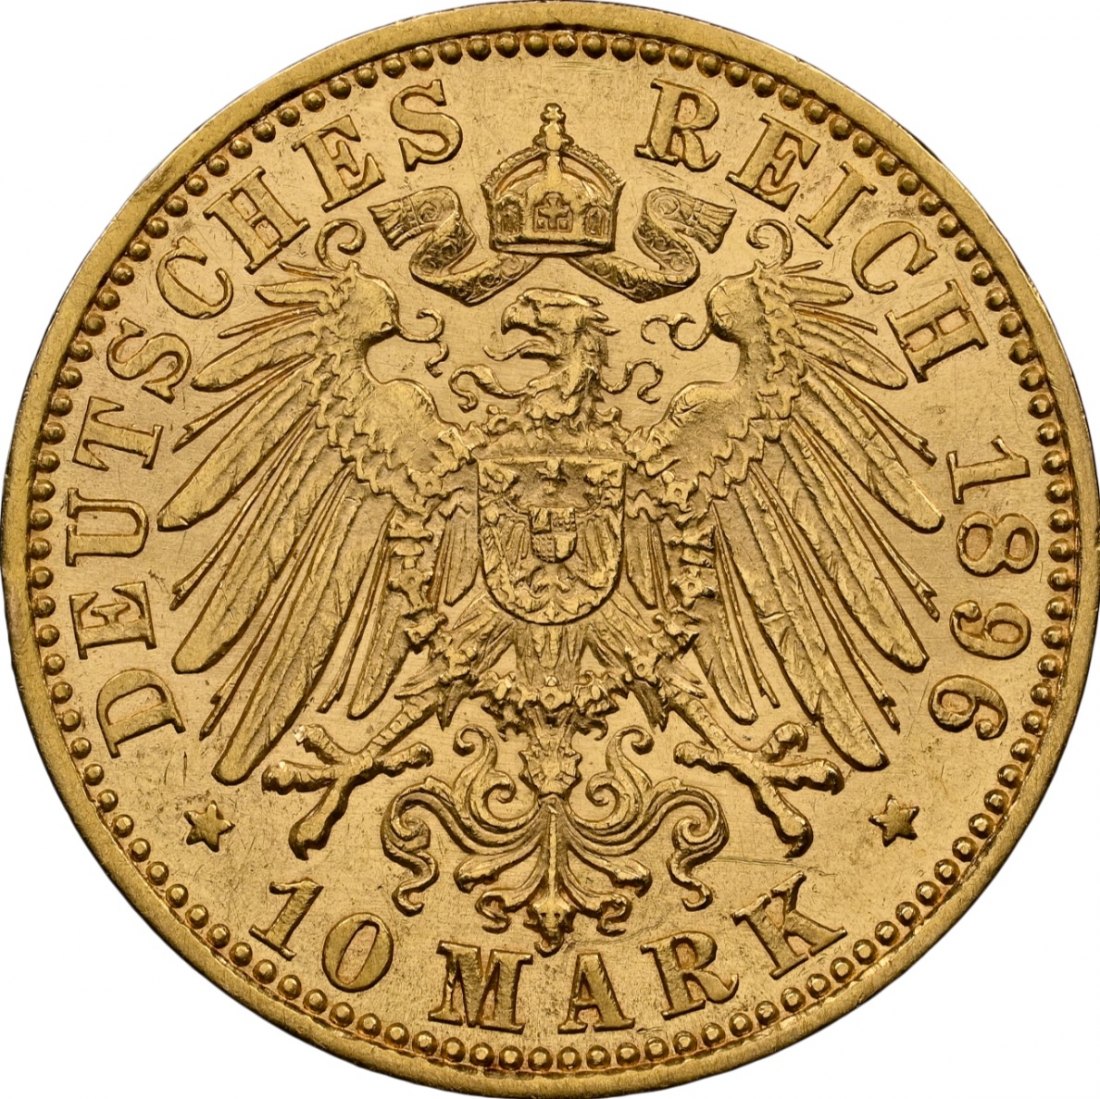  Deutsches Reich Hessen 10 Mark 1896 | NGC OBV Cleaned | Ernst Ludwig   